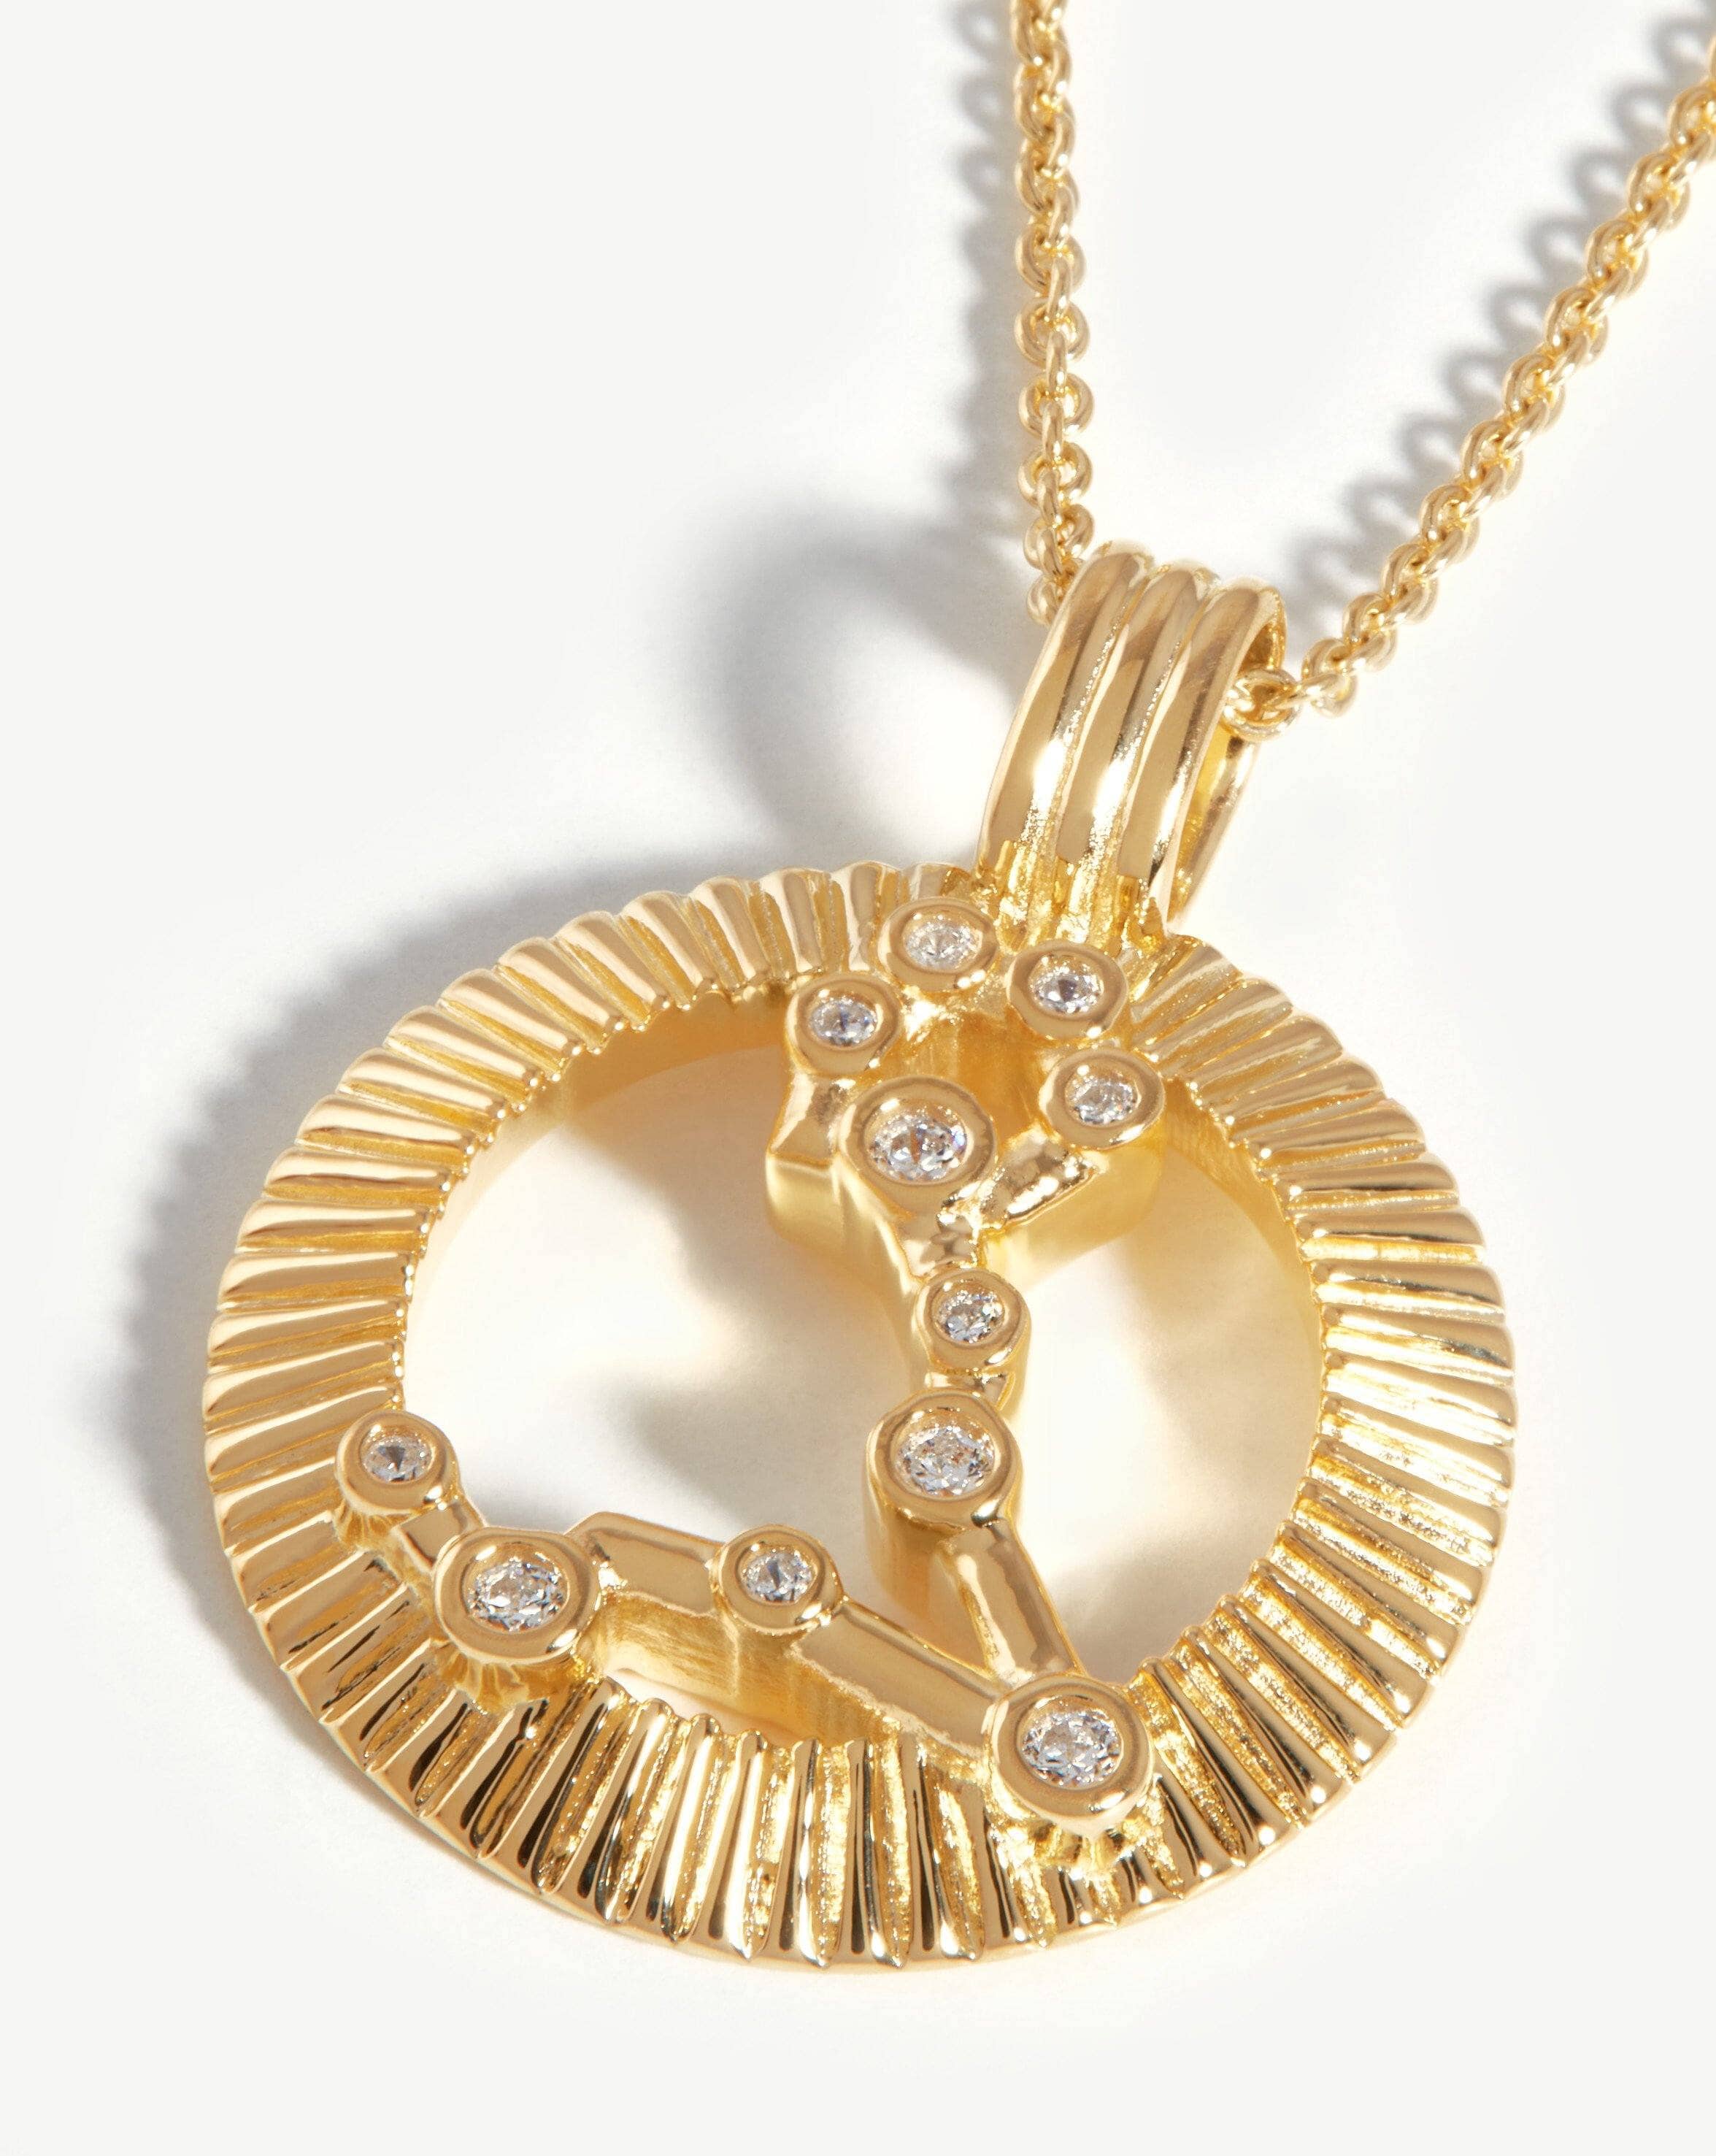 Zodiac Constellation Pendant Necklace - Pisces | 18ct Gold Plated Vermeil/Pisces Necklaces Missoma 